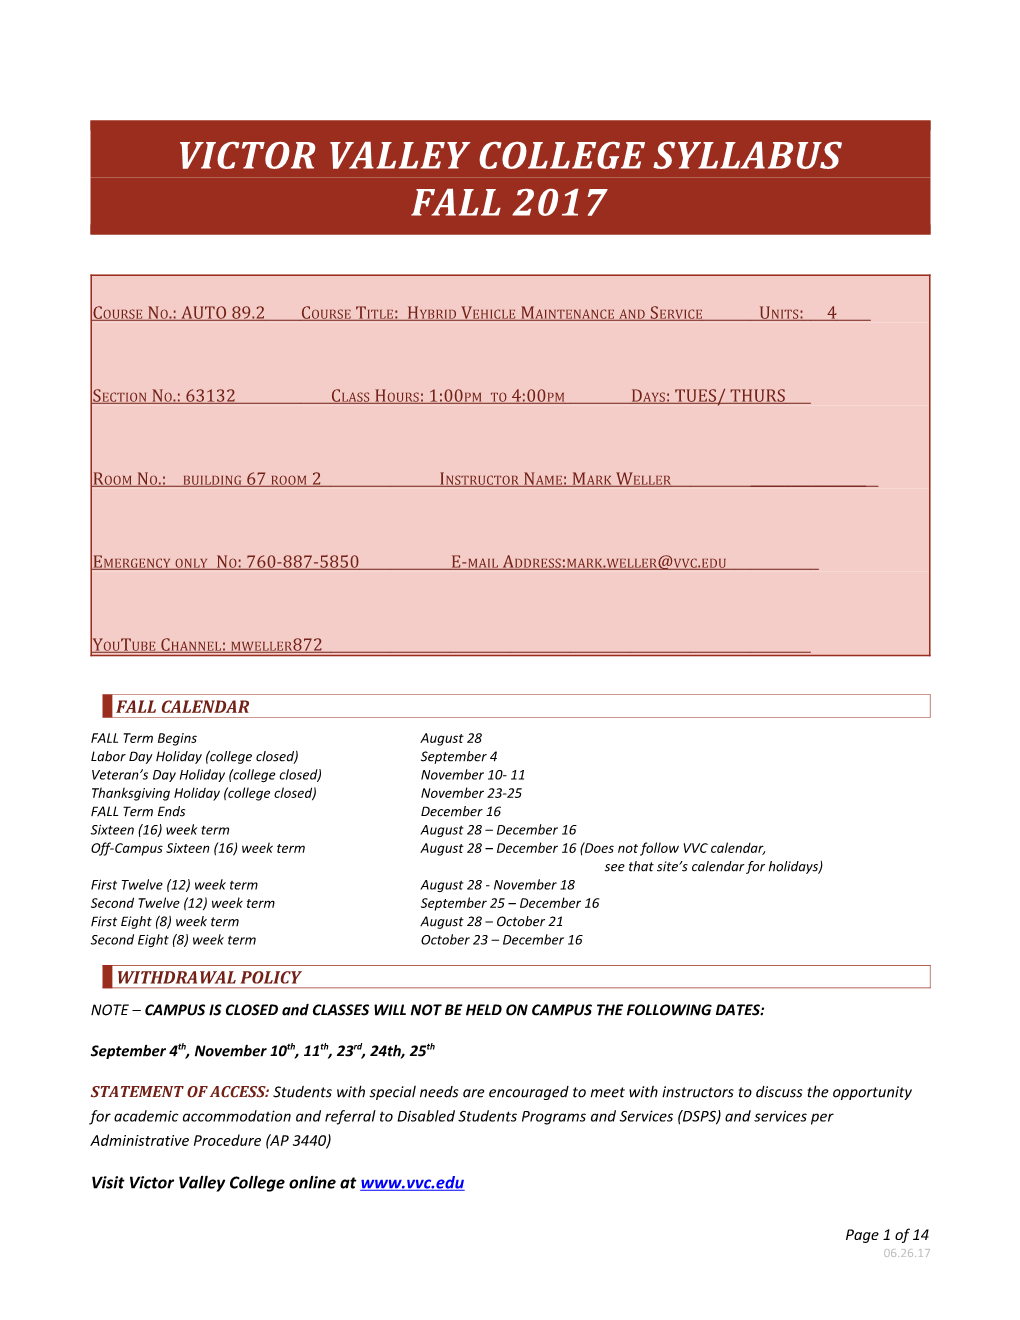 Victor Valley College Syllabus